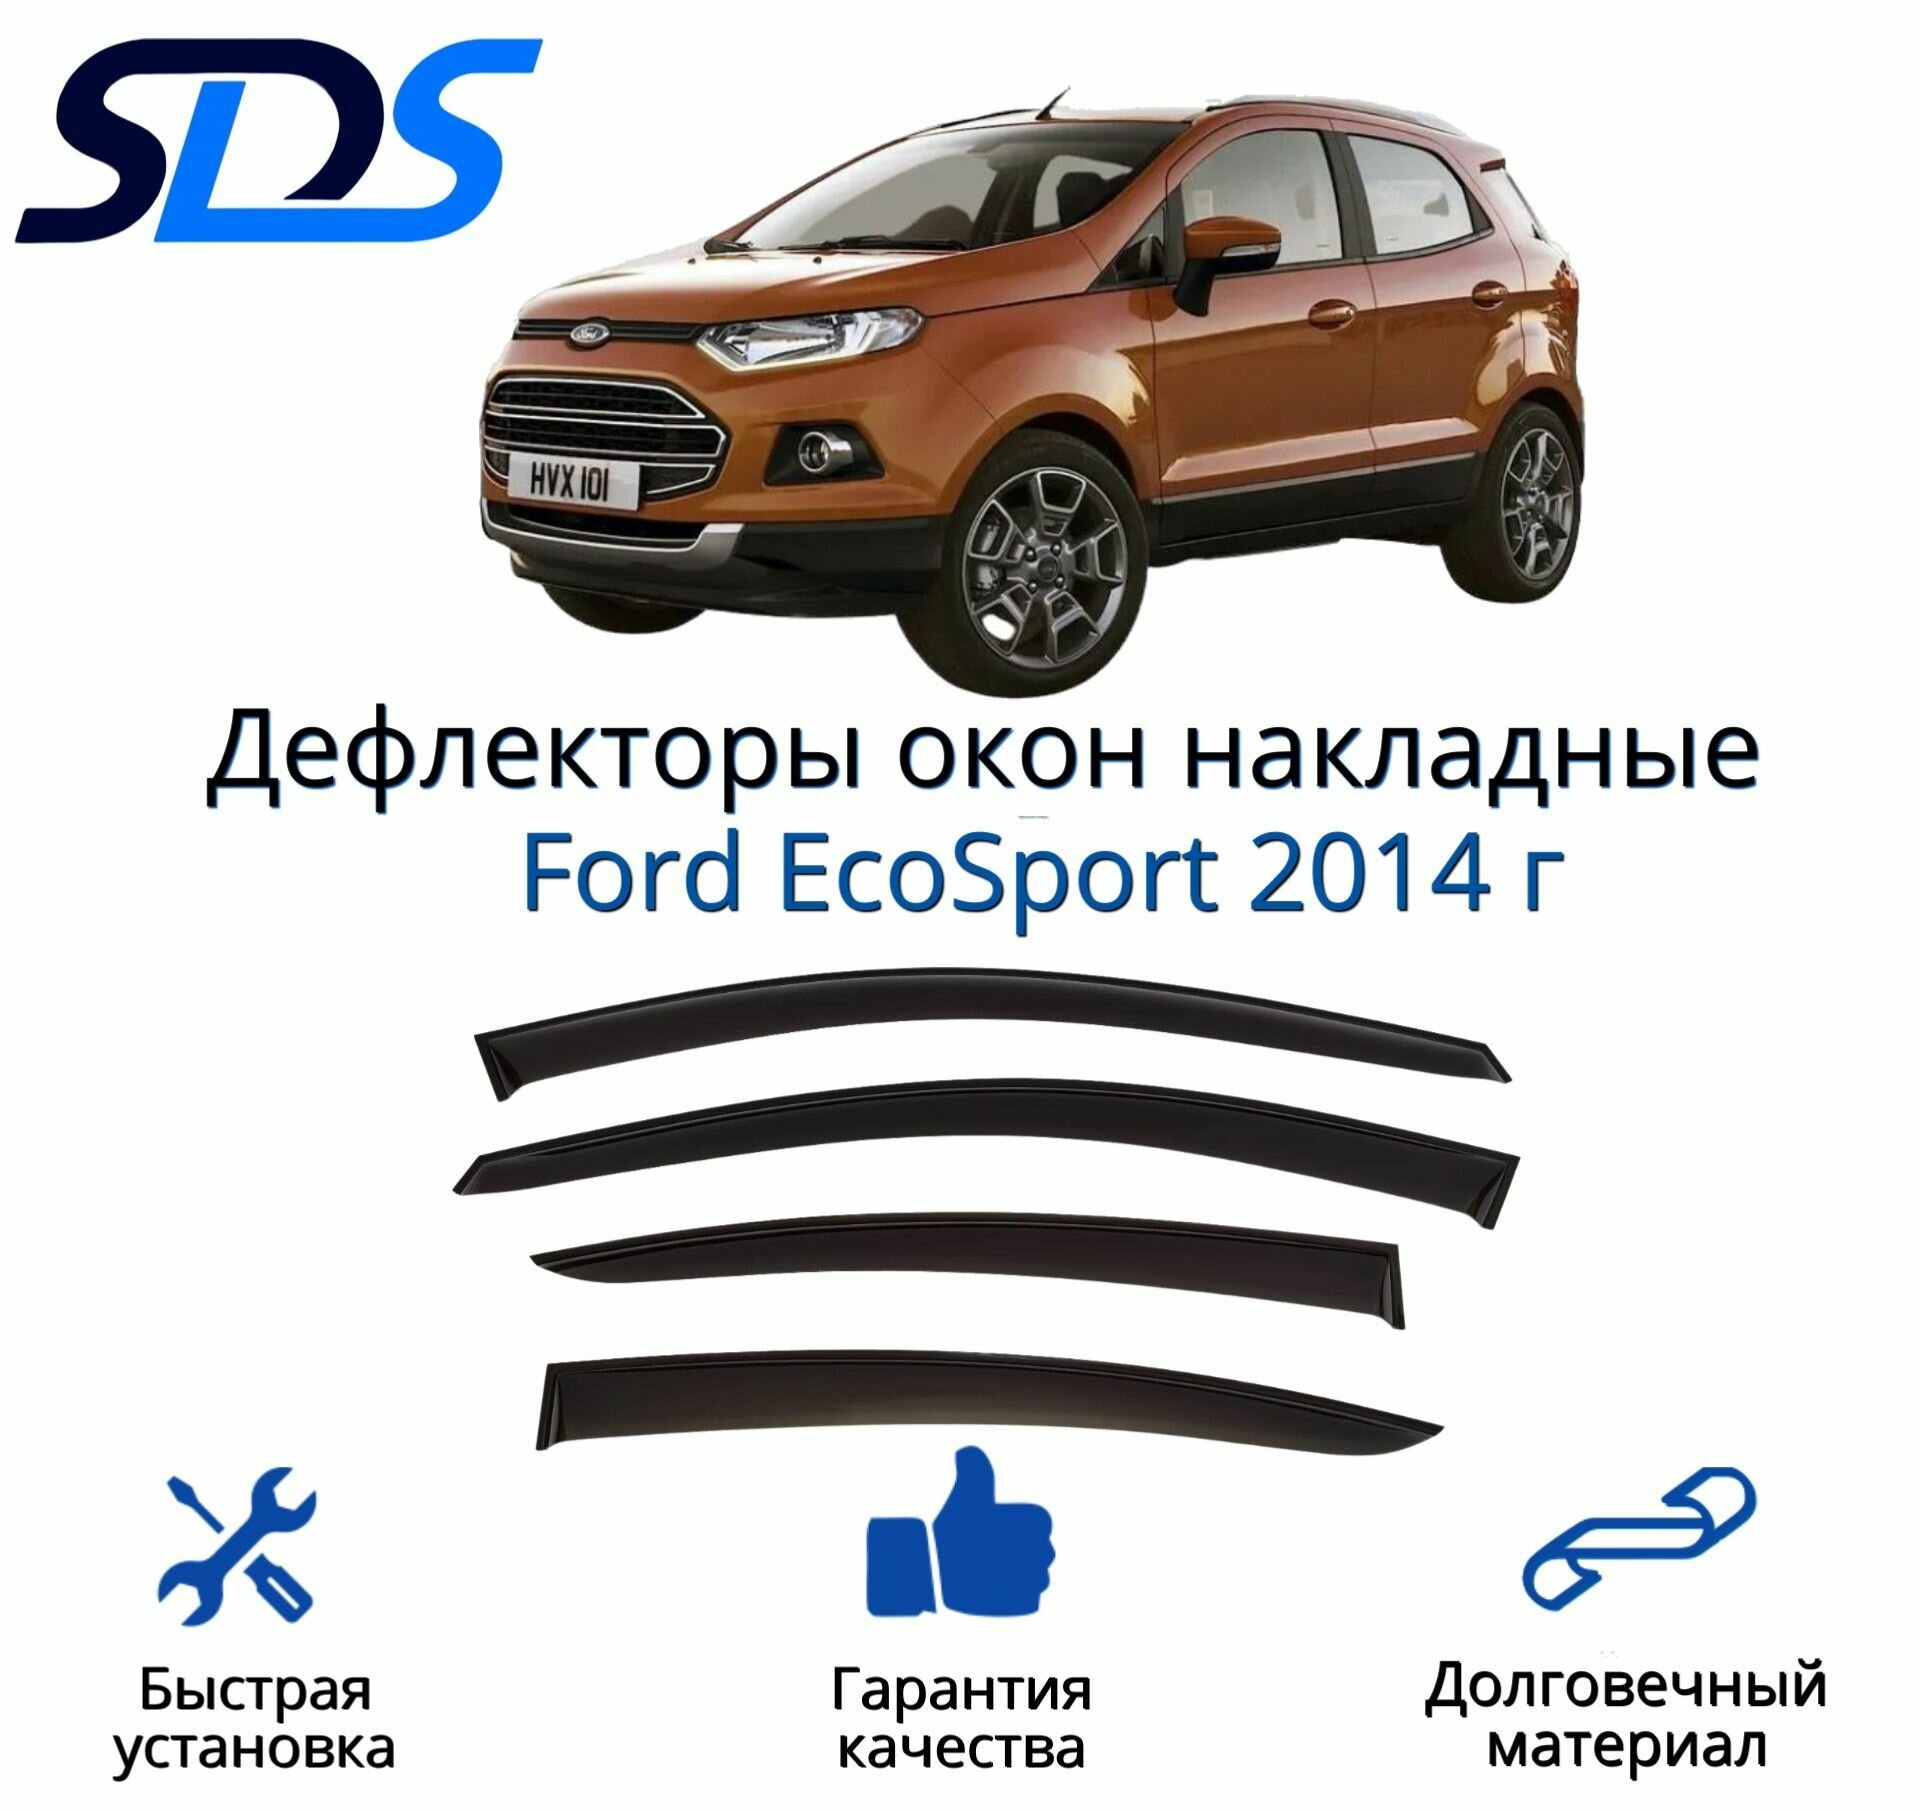 Дефлекторы окон (ветровики) для Ford EcoSport 2014 г.